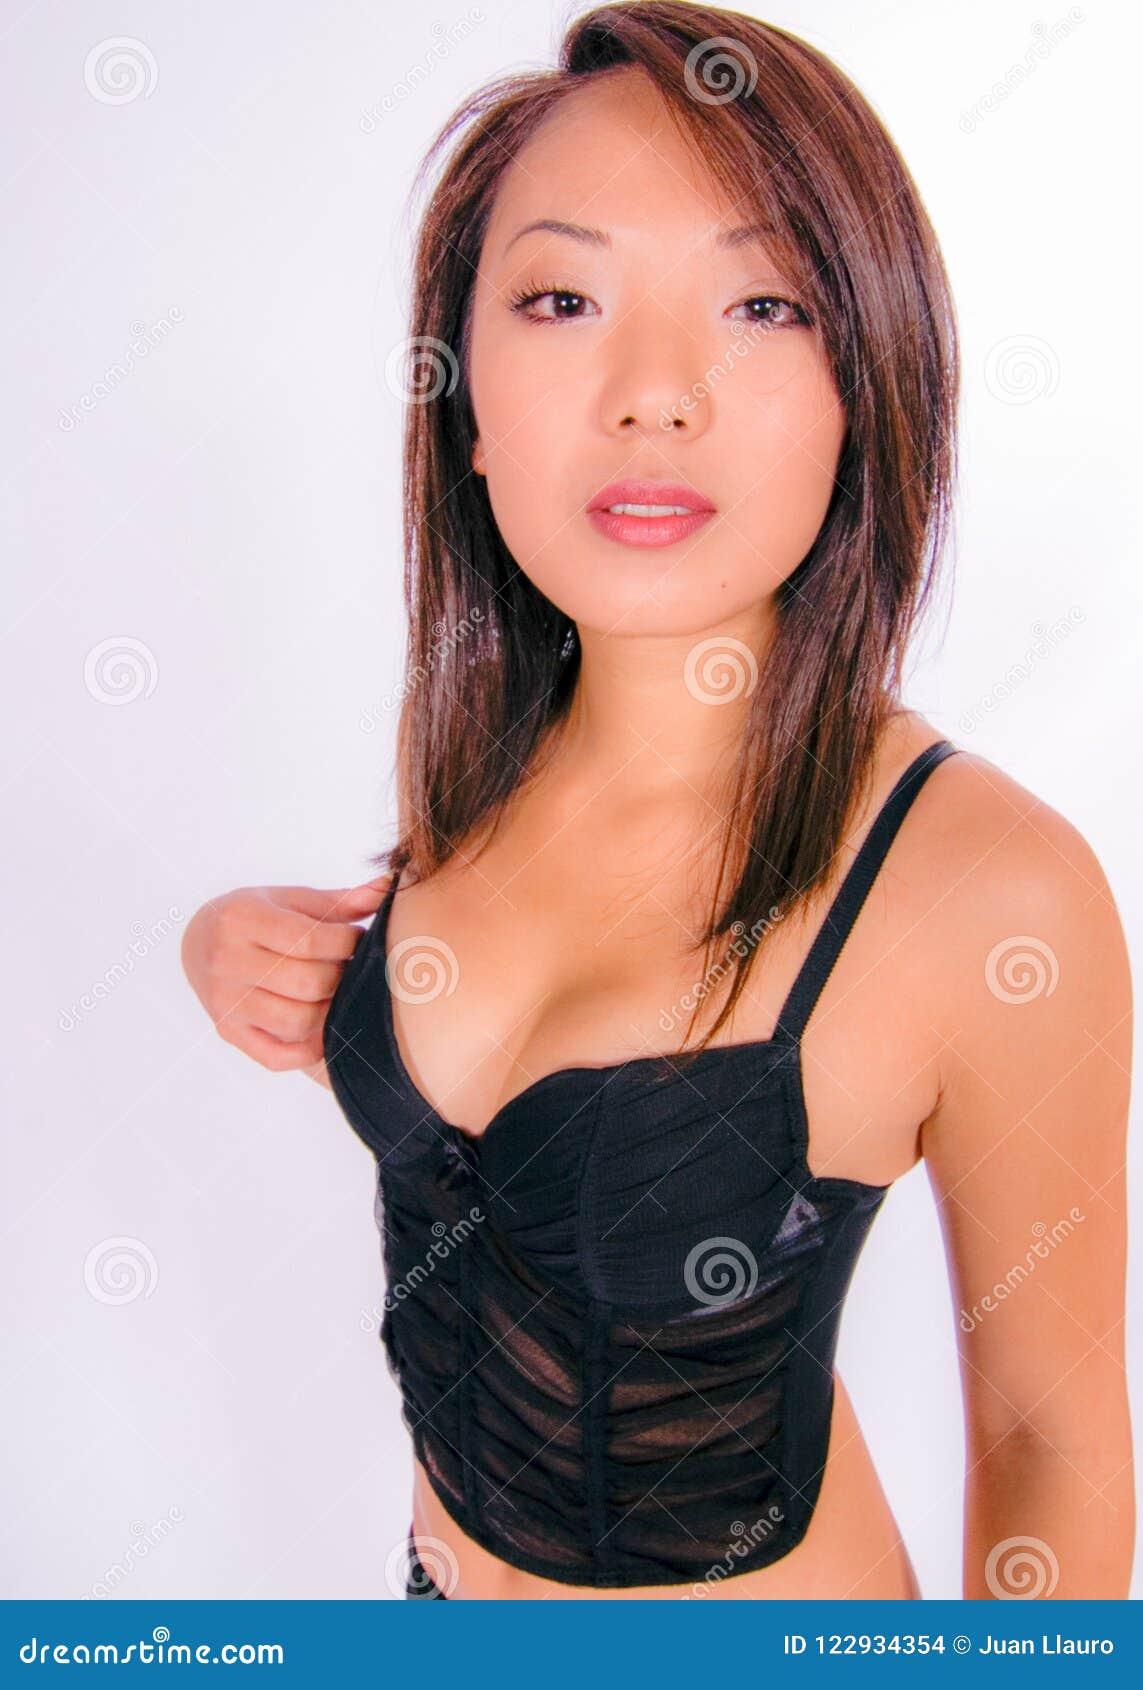 Exotic sexy asian women